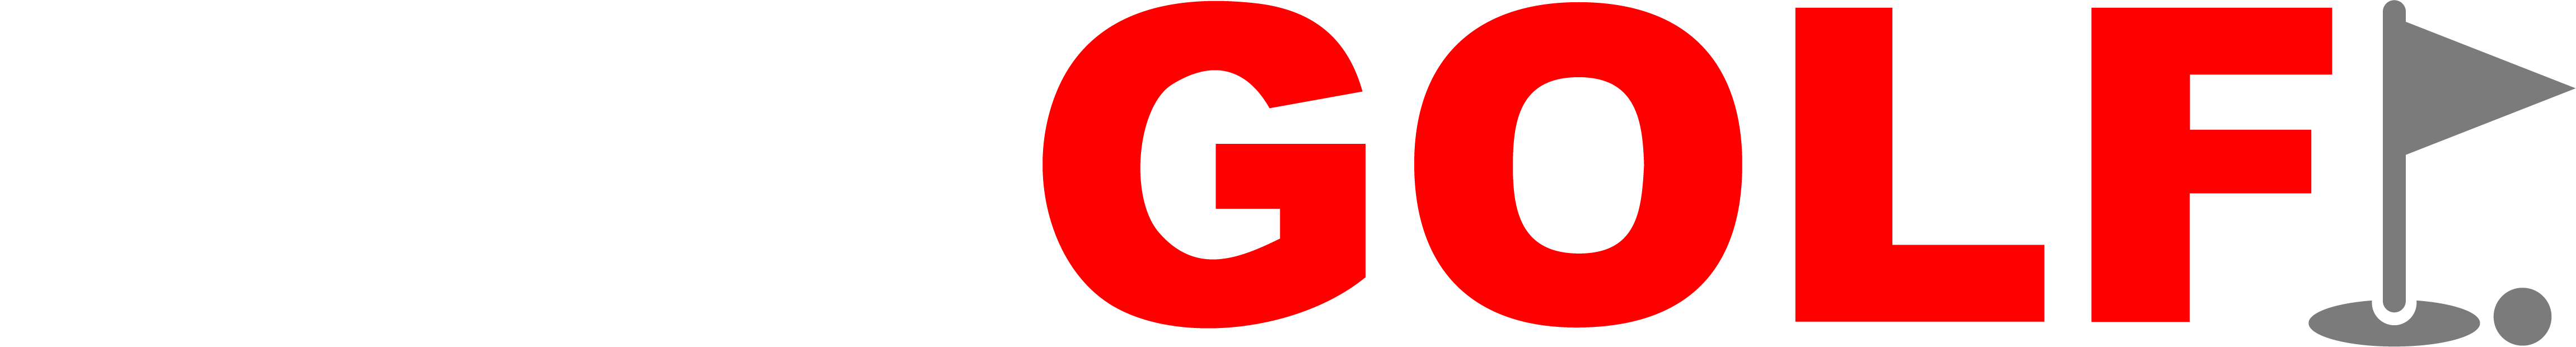 HotGolf company logo